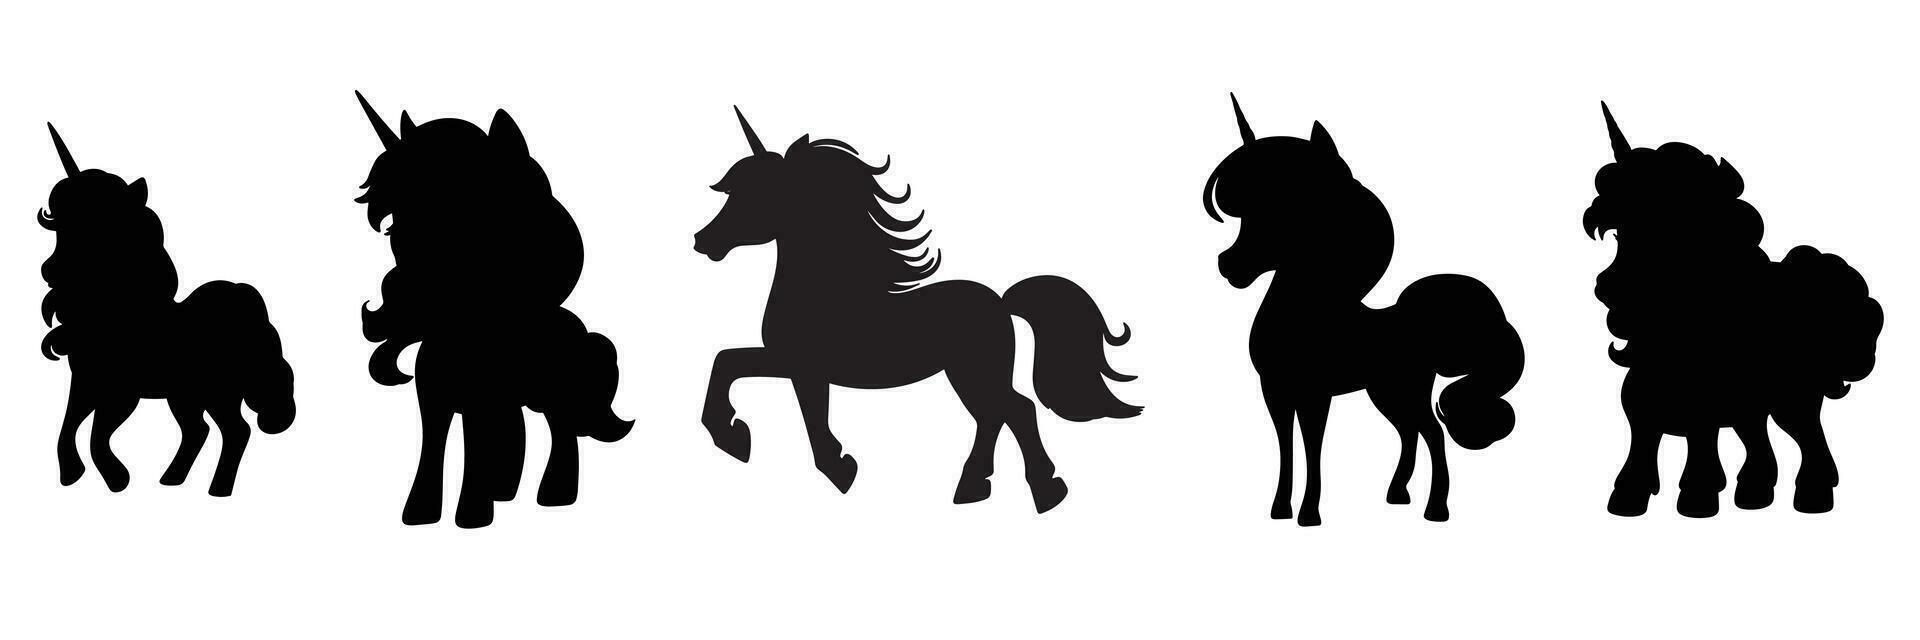 samling av unicorns silhuett. uppsättning silhuetter av enhörning isolerat på vit bakgrund. vektor illustration.